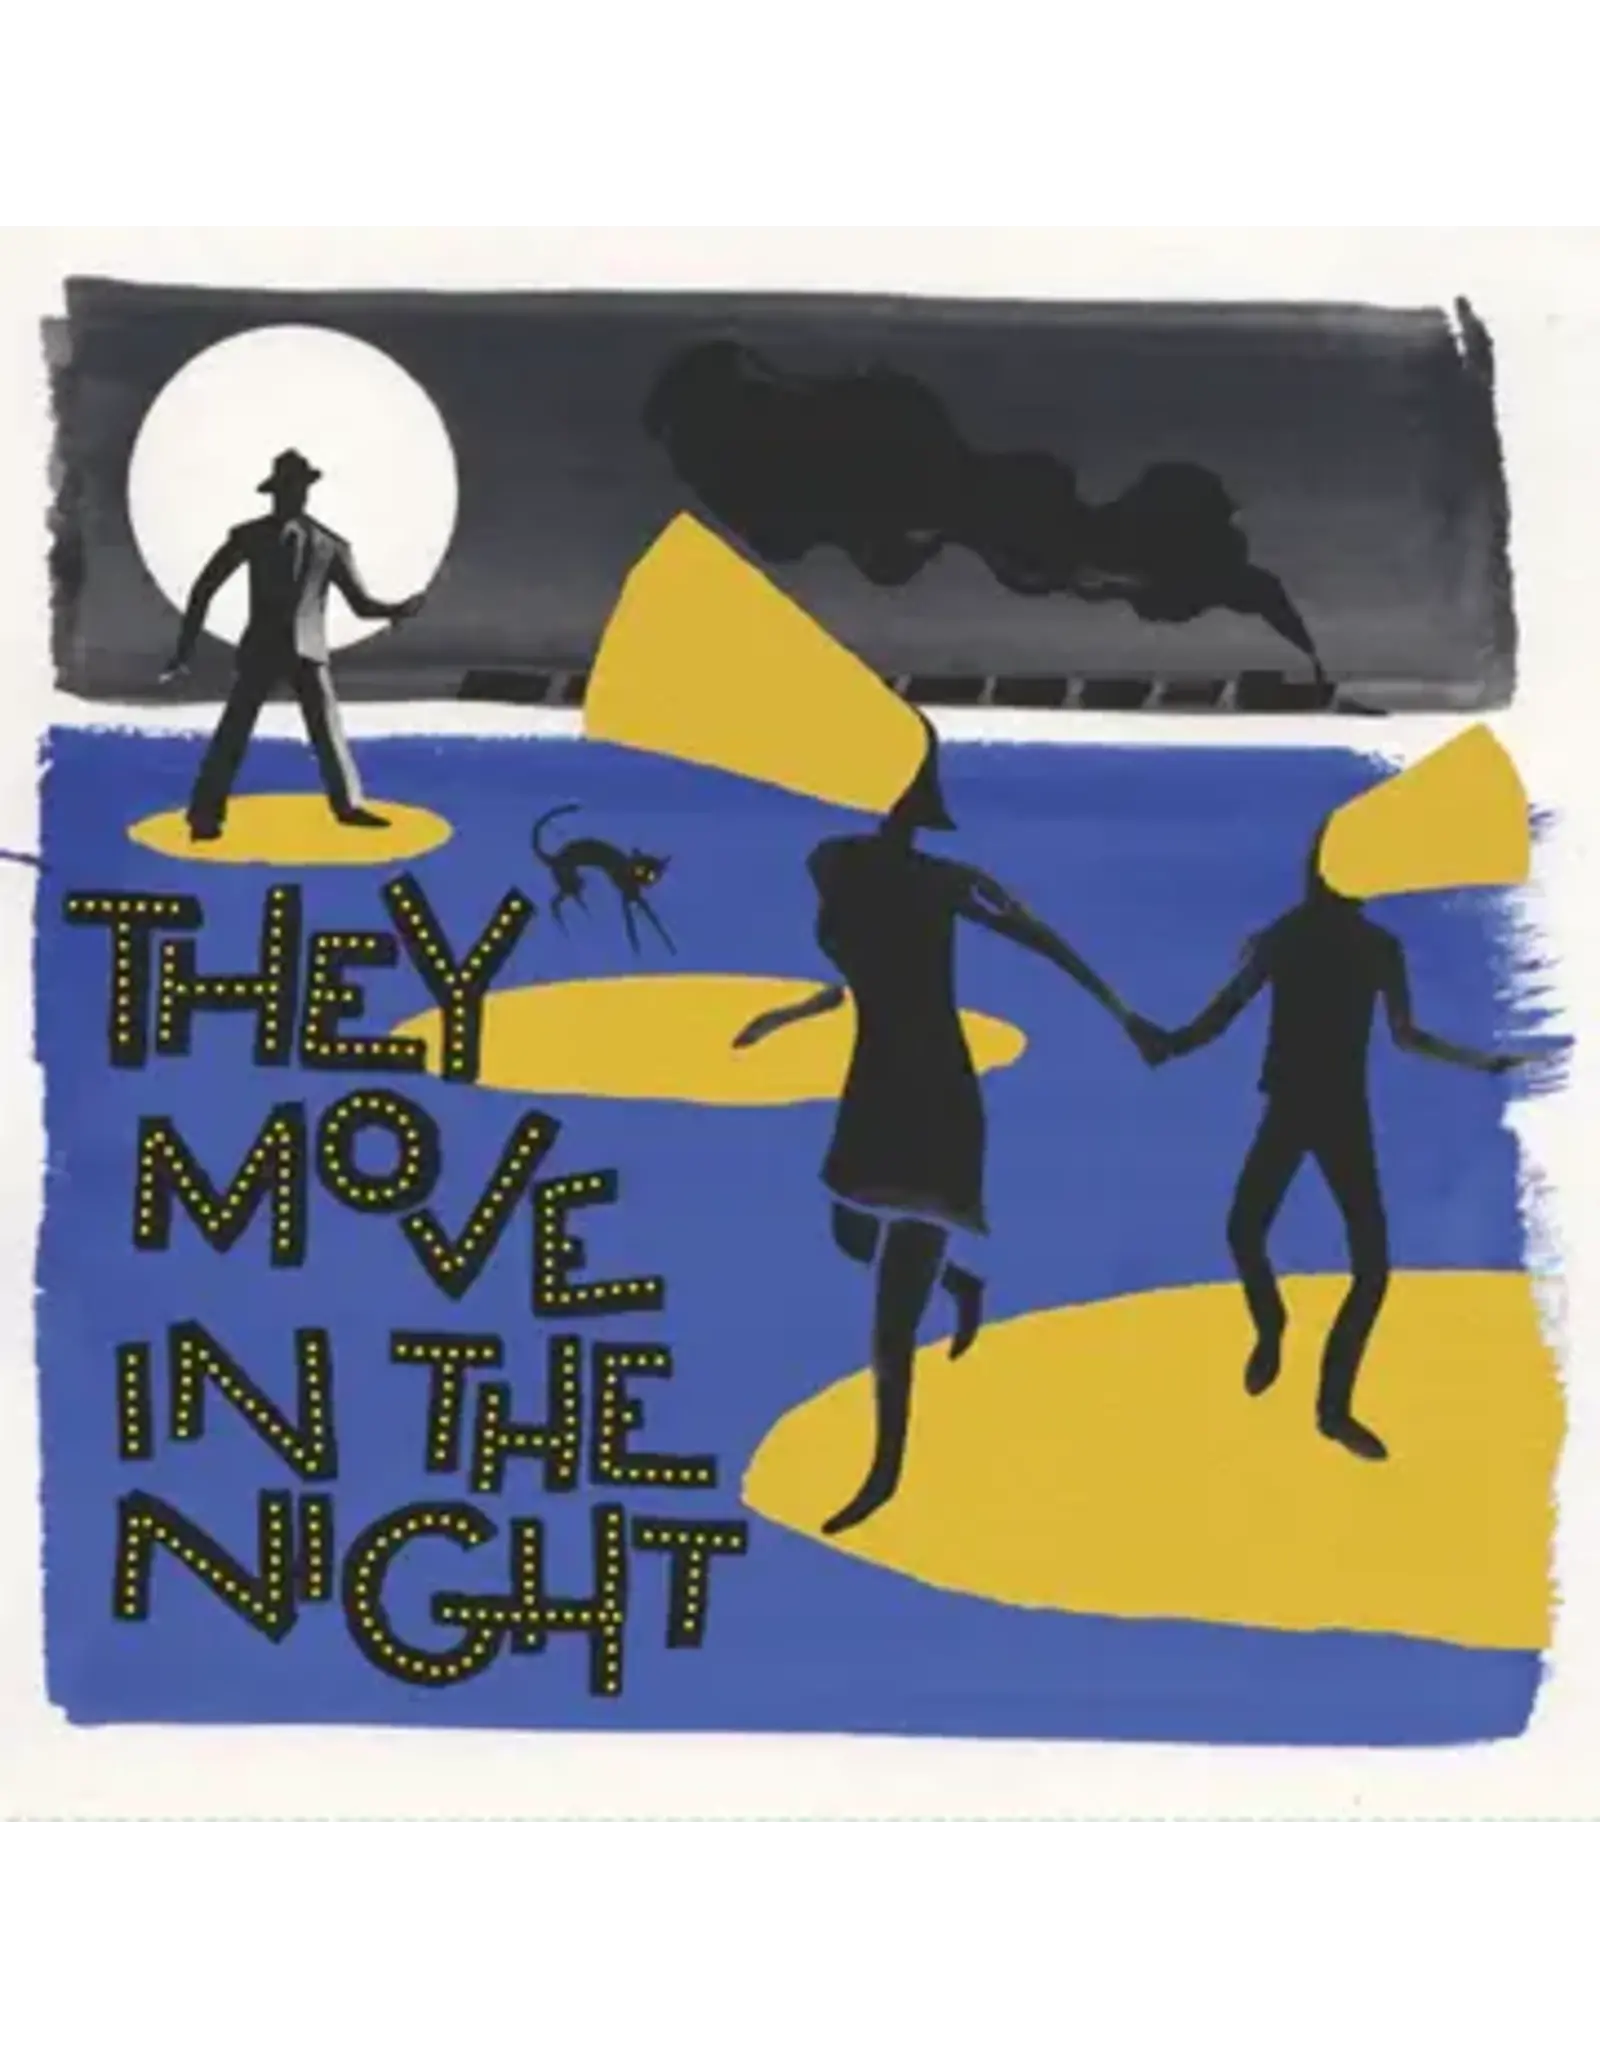 Numero soundtrack: They Move In The Night (opaque dark purple) LP